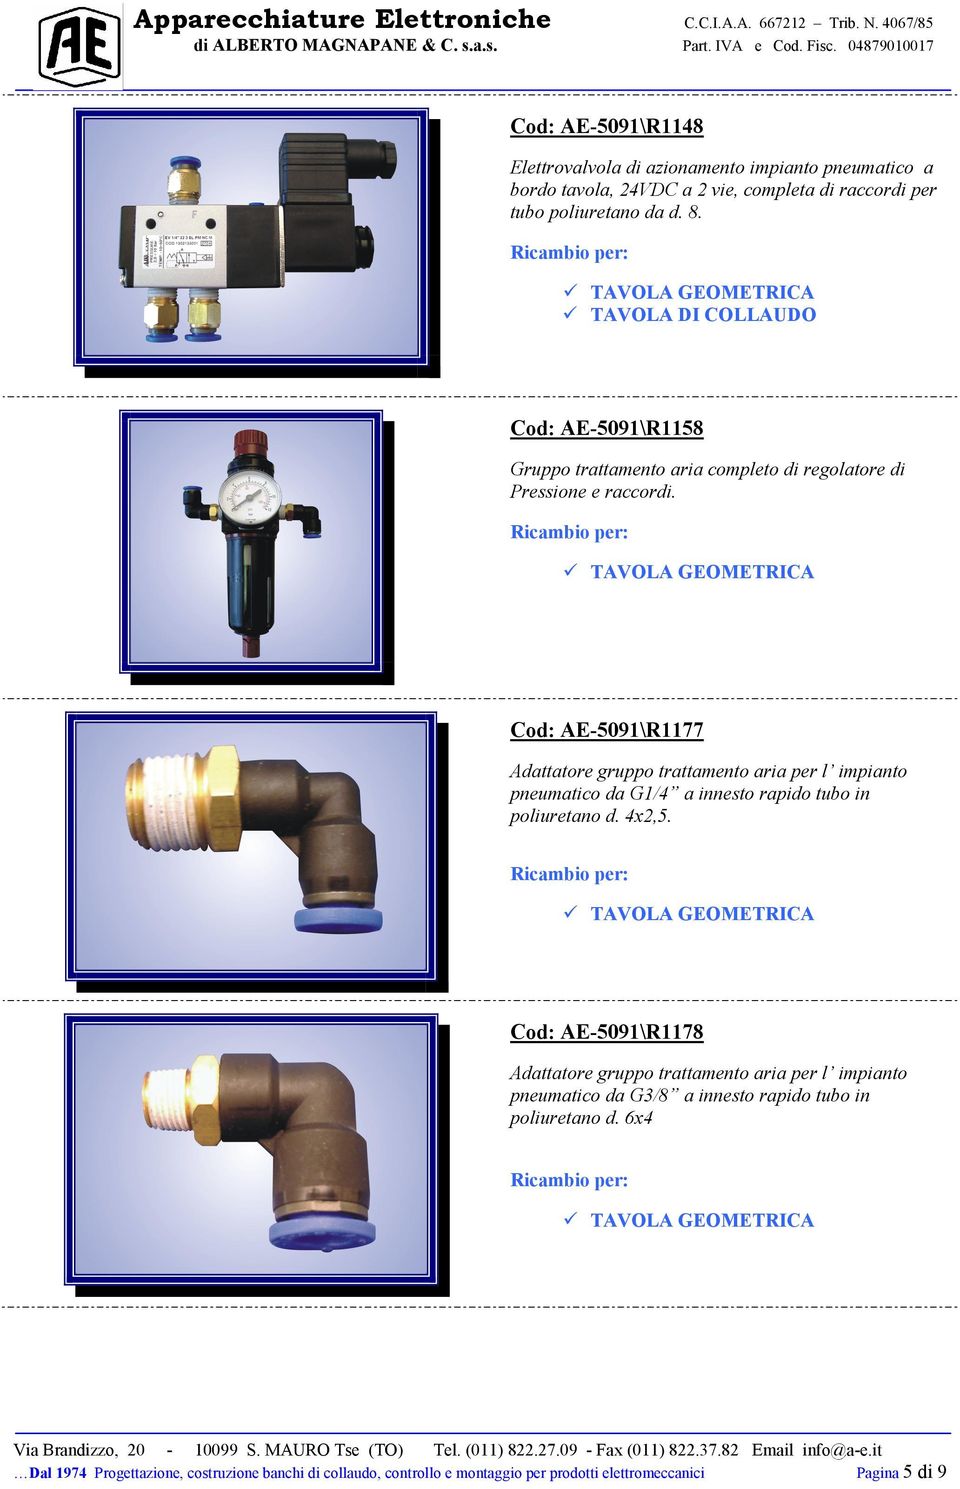 Cod: AE-5091\R1177 Adattatore gruppo trattamento aria per l impianto pneumatico da G1/4 a innesto rapido tubo in poliuretano d. 4x2,5.